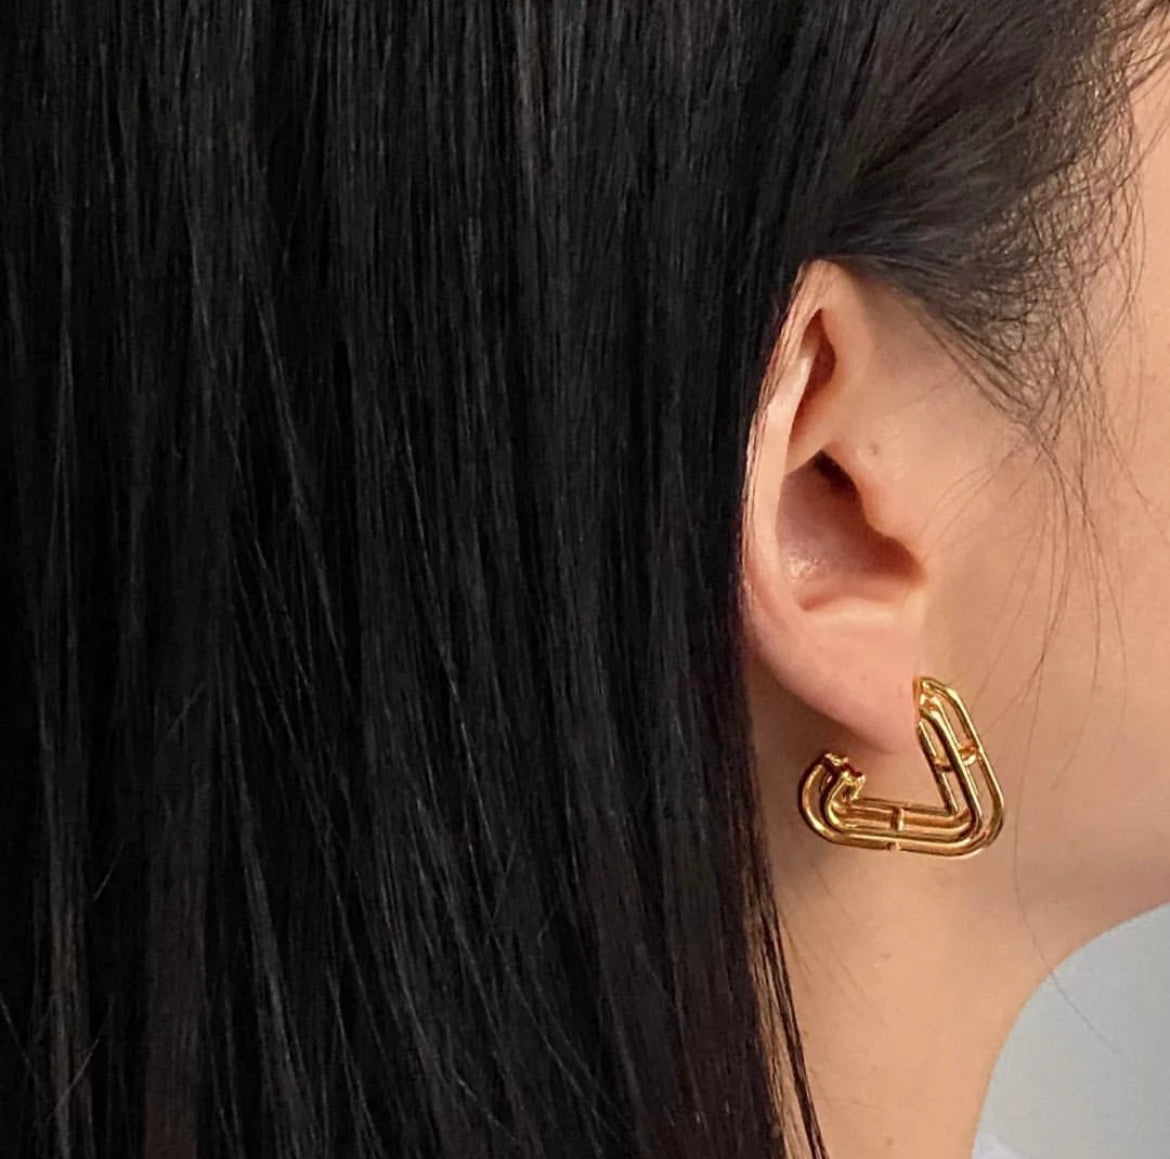 Alps Earrings in Gold